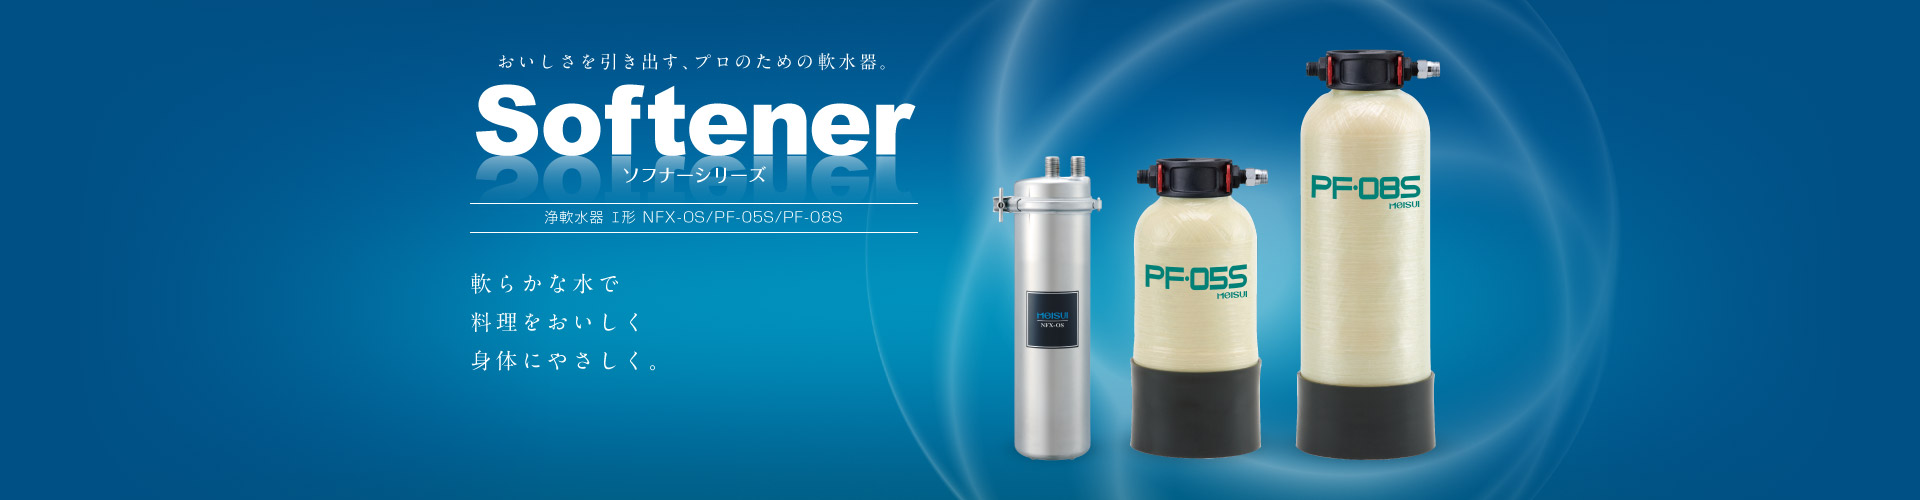 ソフナーシリーズ 浄軟水器 業務用全自動軟水器Ⅰ形